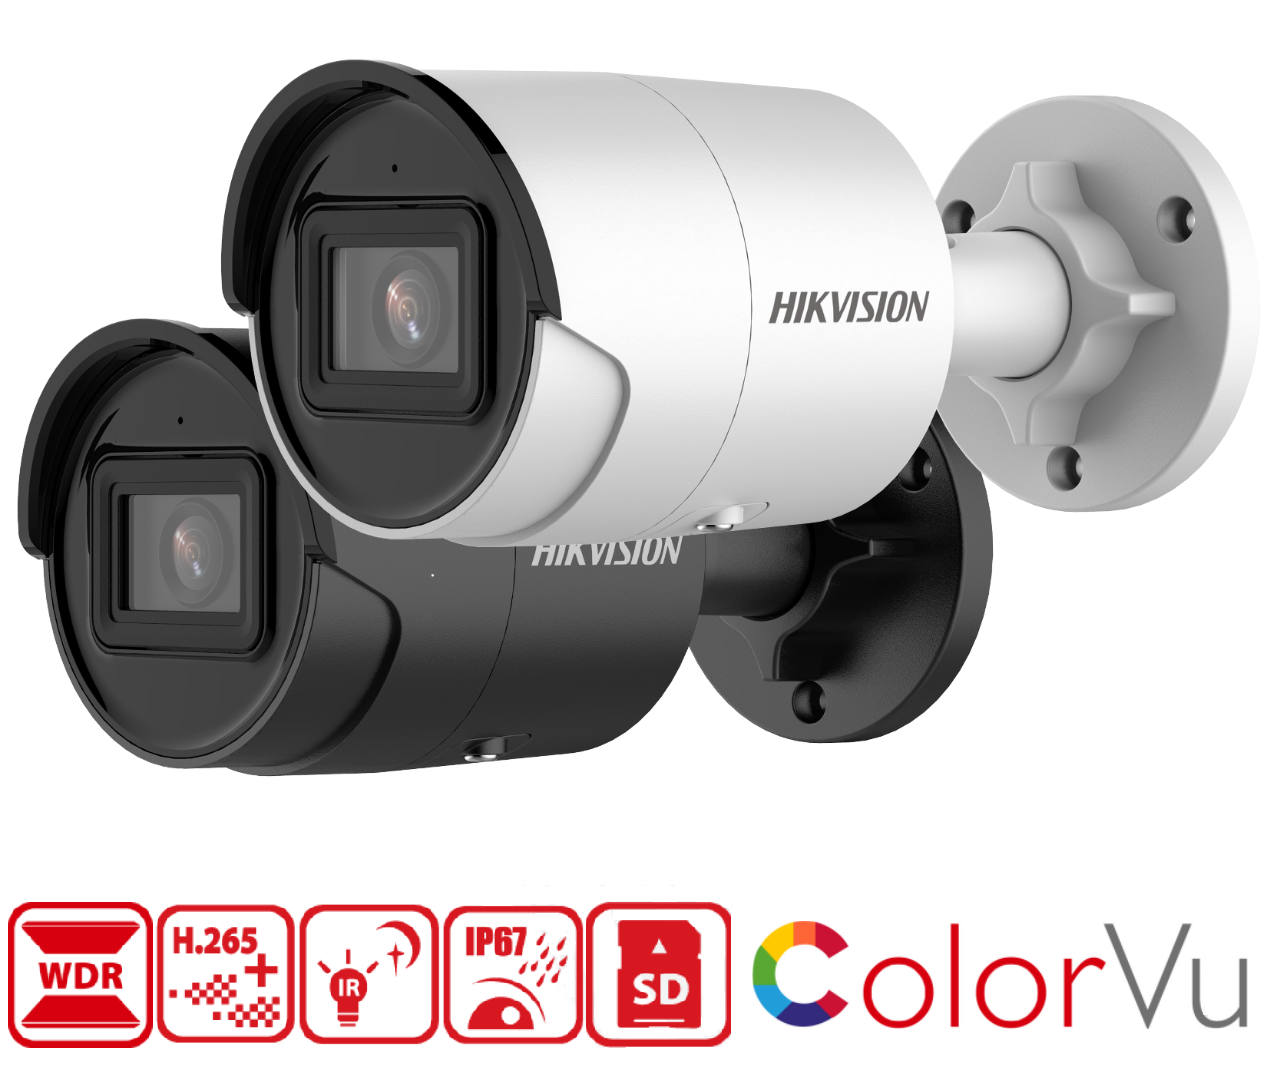 Kamera Hikvision  DS-2CD2043G2-I má rozlišení 2688 x 1520px při 25 fps, krytí IP67, 120dB WDR snímač DarkFighter, micro SD slot na 256GB kartu, podporu kodeku H.265, barevné noční vidění ColorVu a algoritmus hlubokého učení AcuSense 2.0 pro chytrou detekci pohybu.